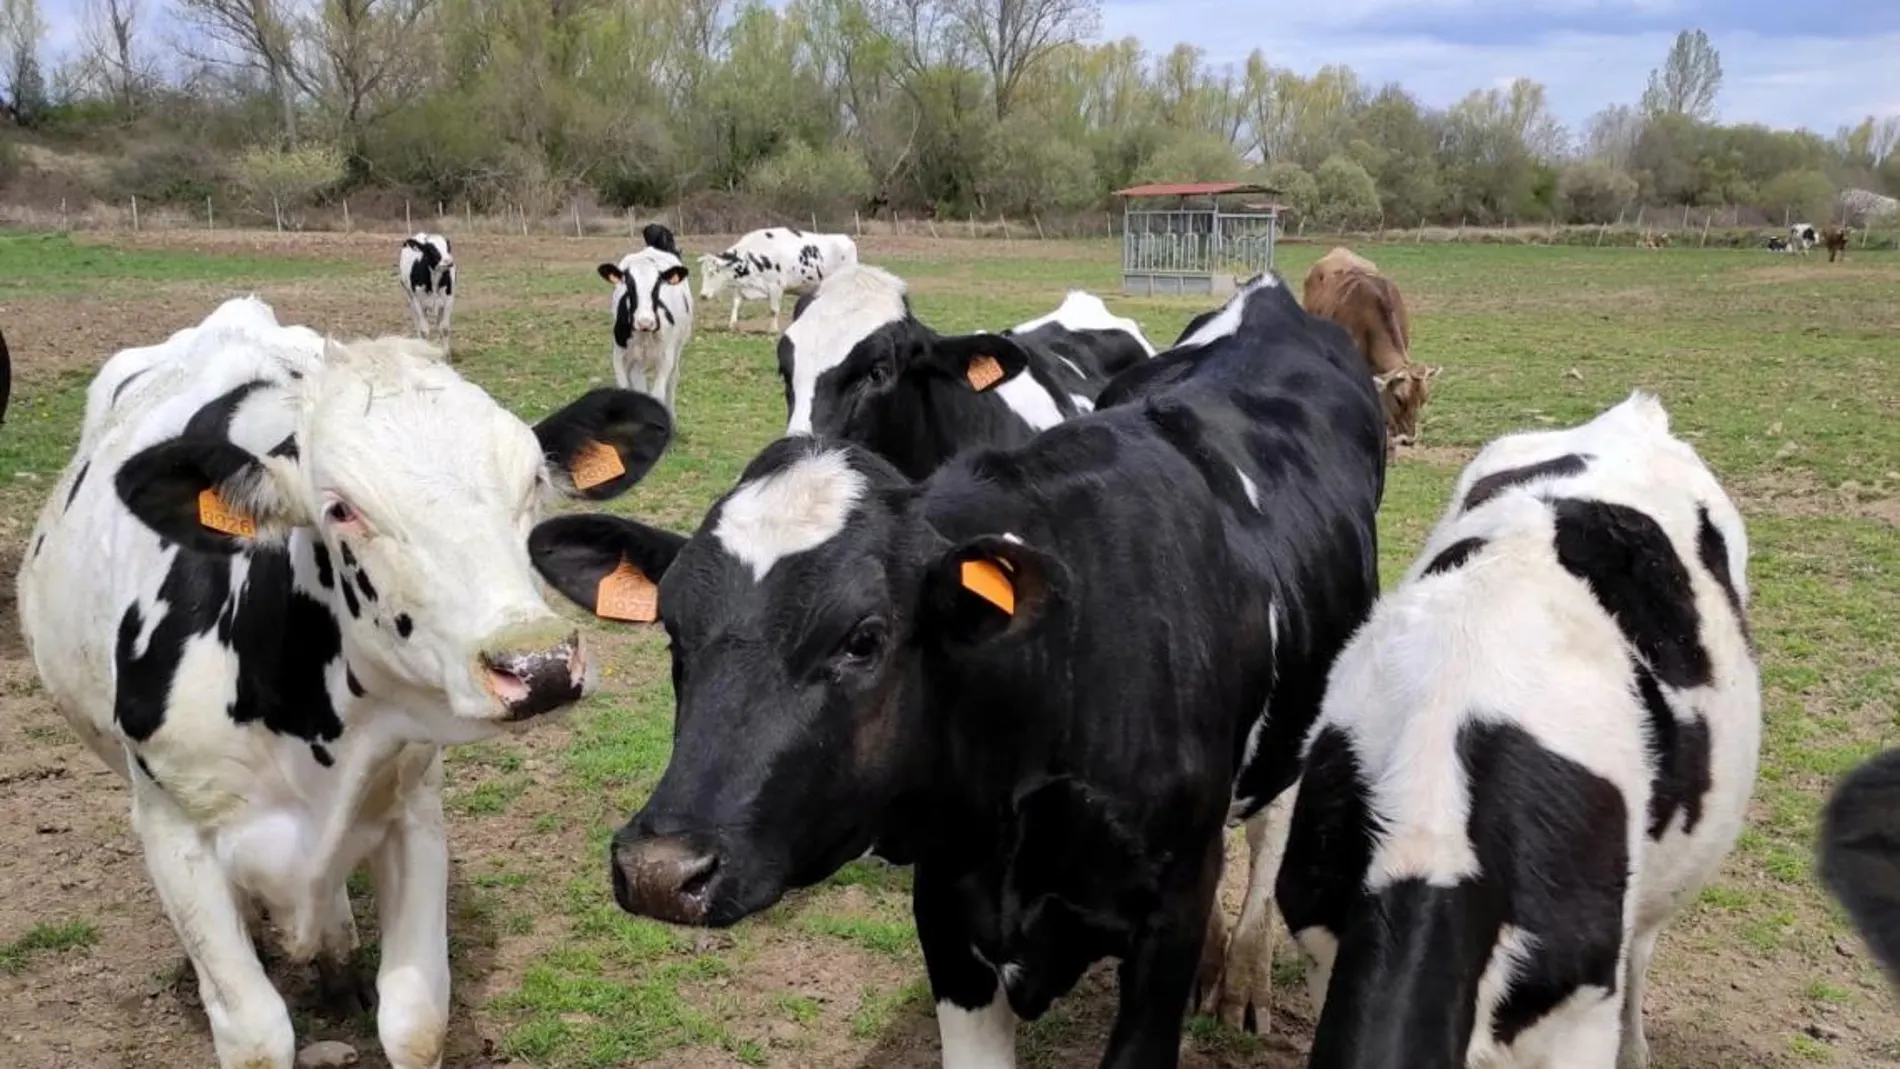 Los equipos GreenFeed medirán de manera automática las emisiones de metano entérico en el ganado vacuno y pequeños rumiantes